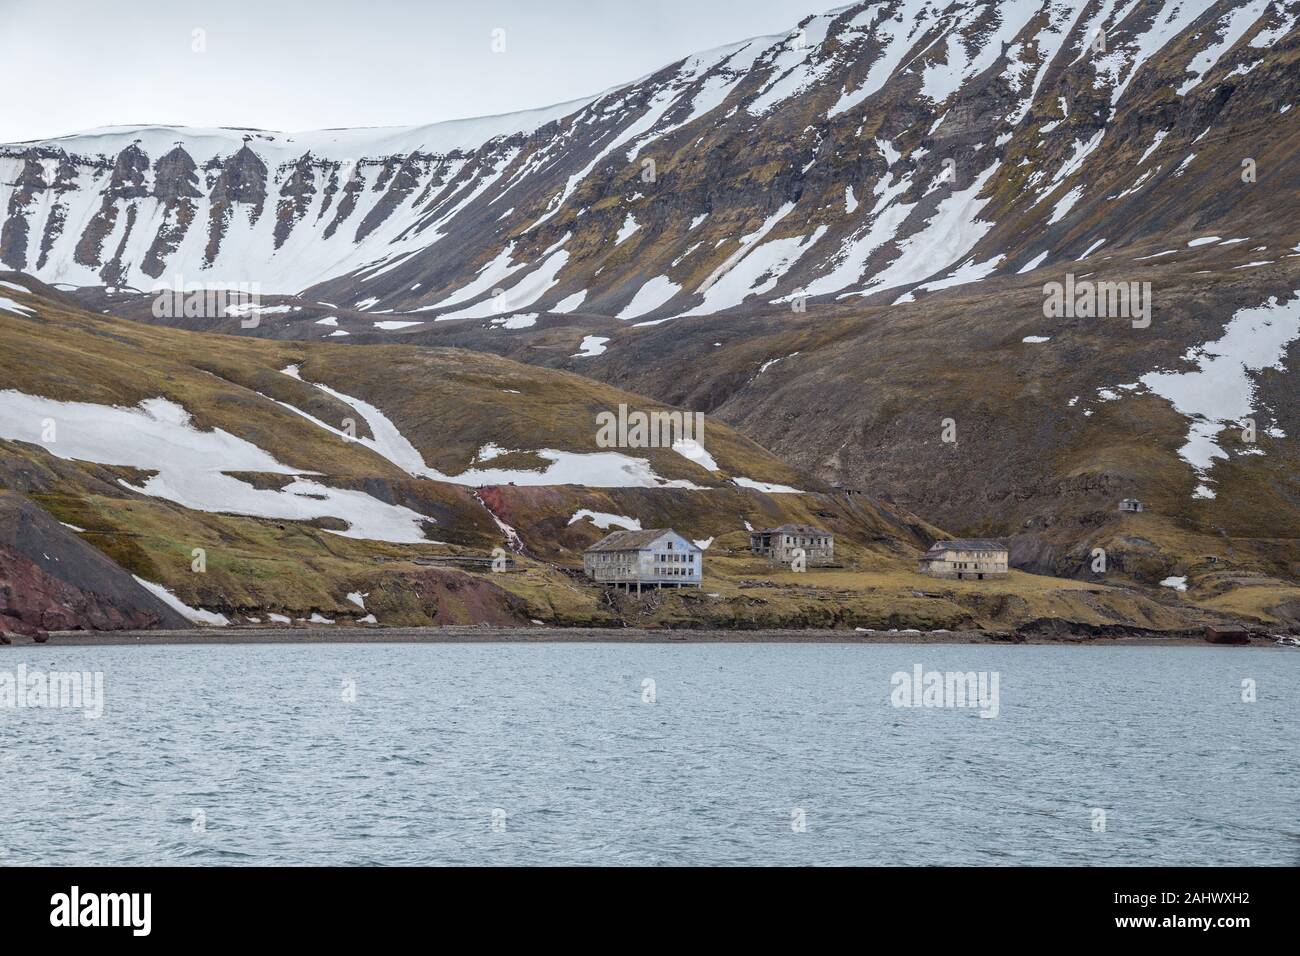 Grumant, un ancien règlement de l'entreprise russe entre Barentsburg et Longyearbyen au Spitzberg, Norvège, créée en 1912 et abandonnée en 1965 Banque D'Images